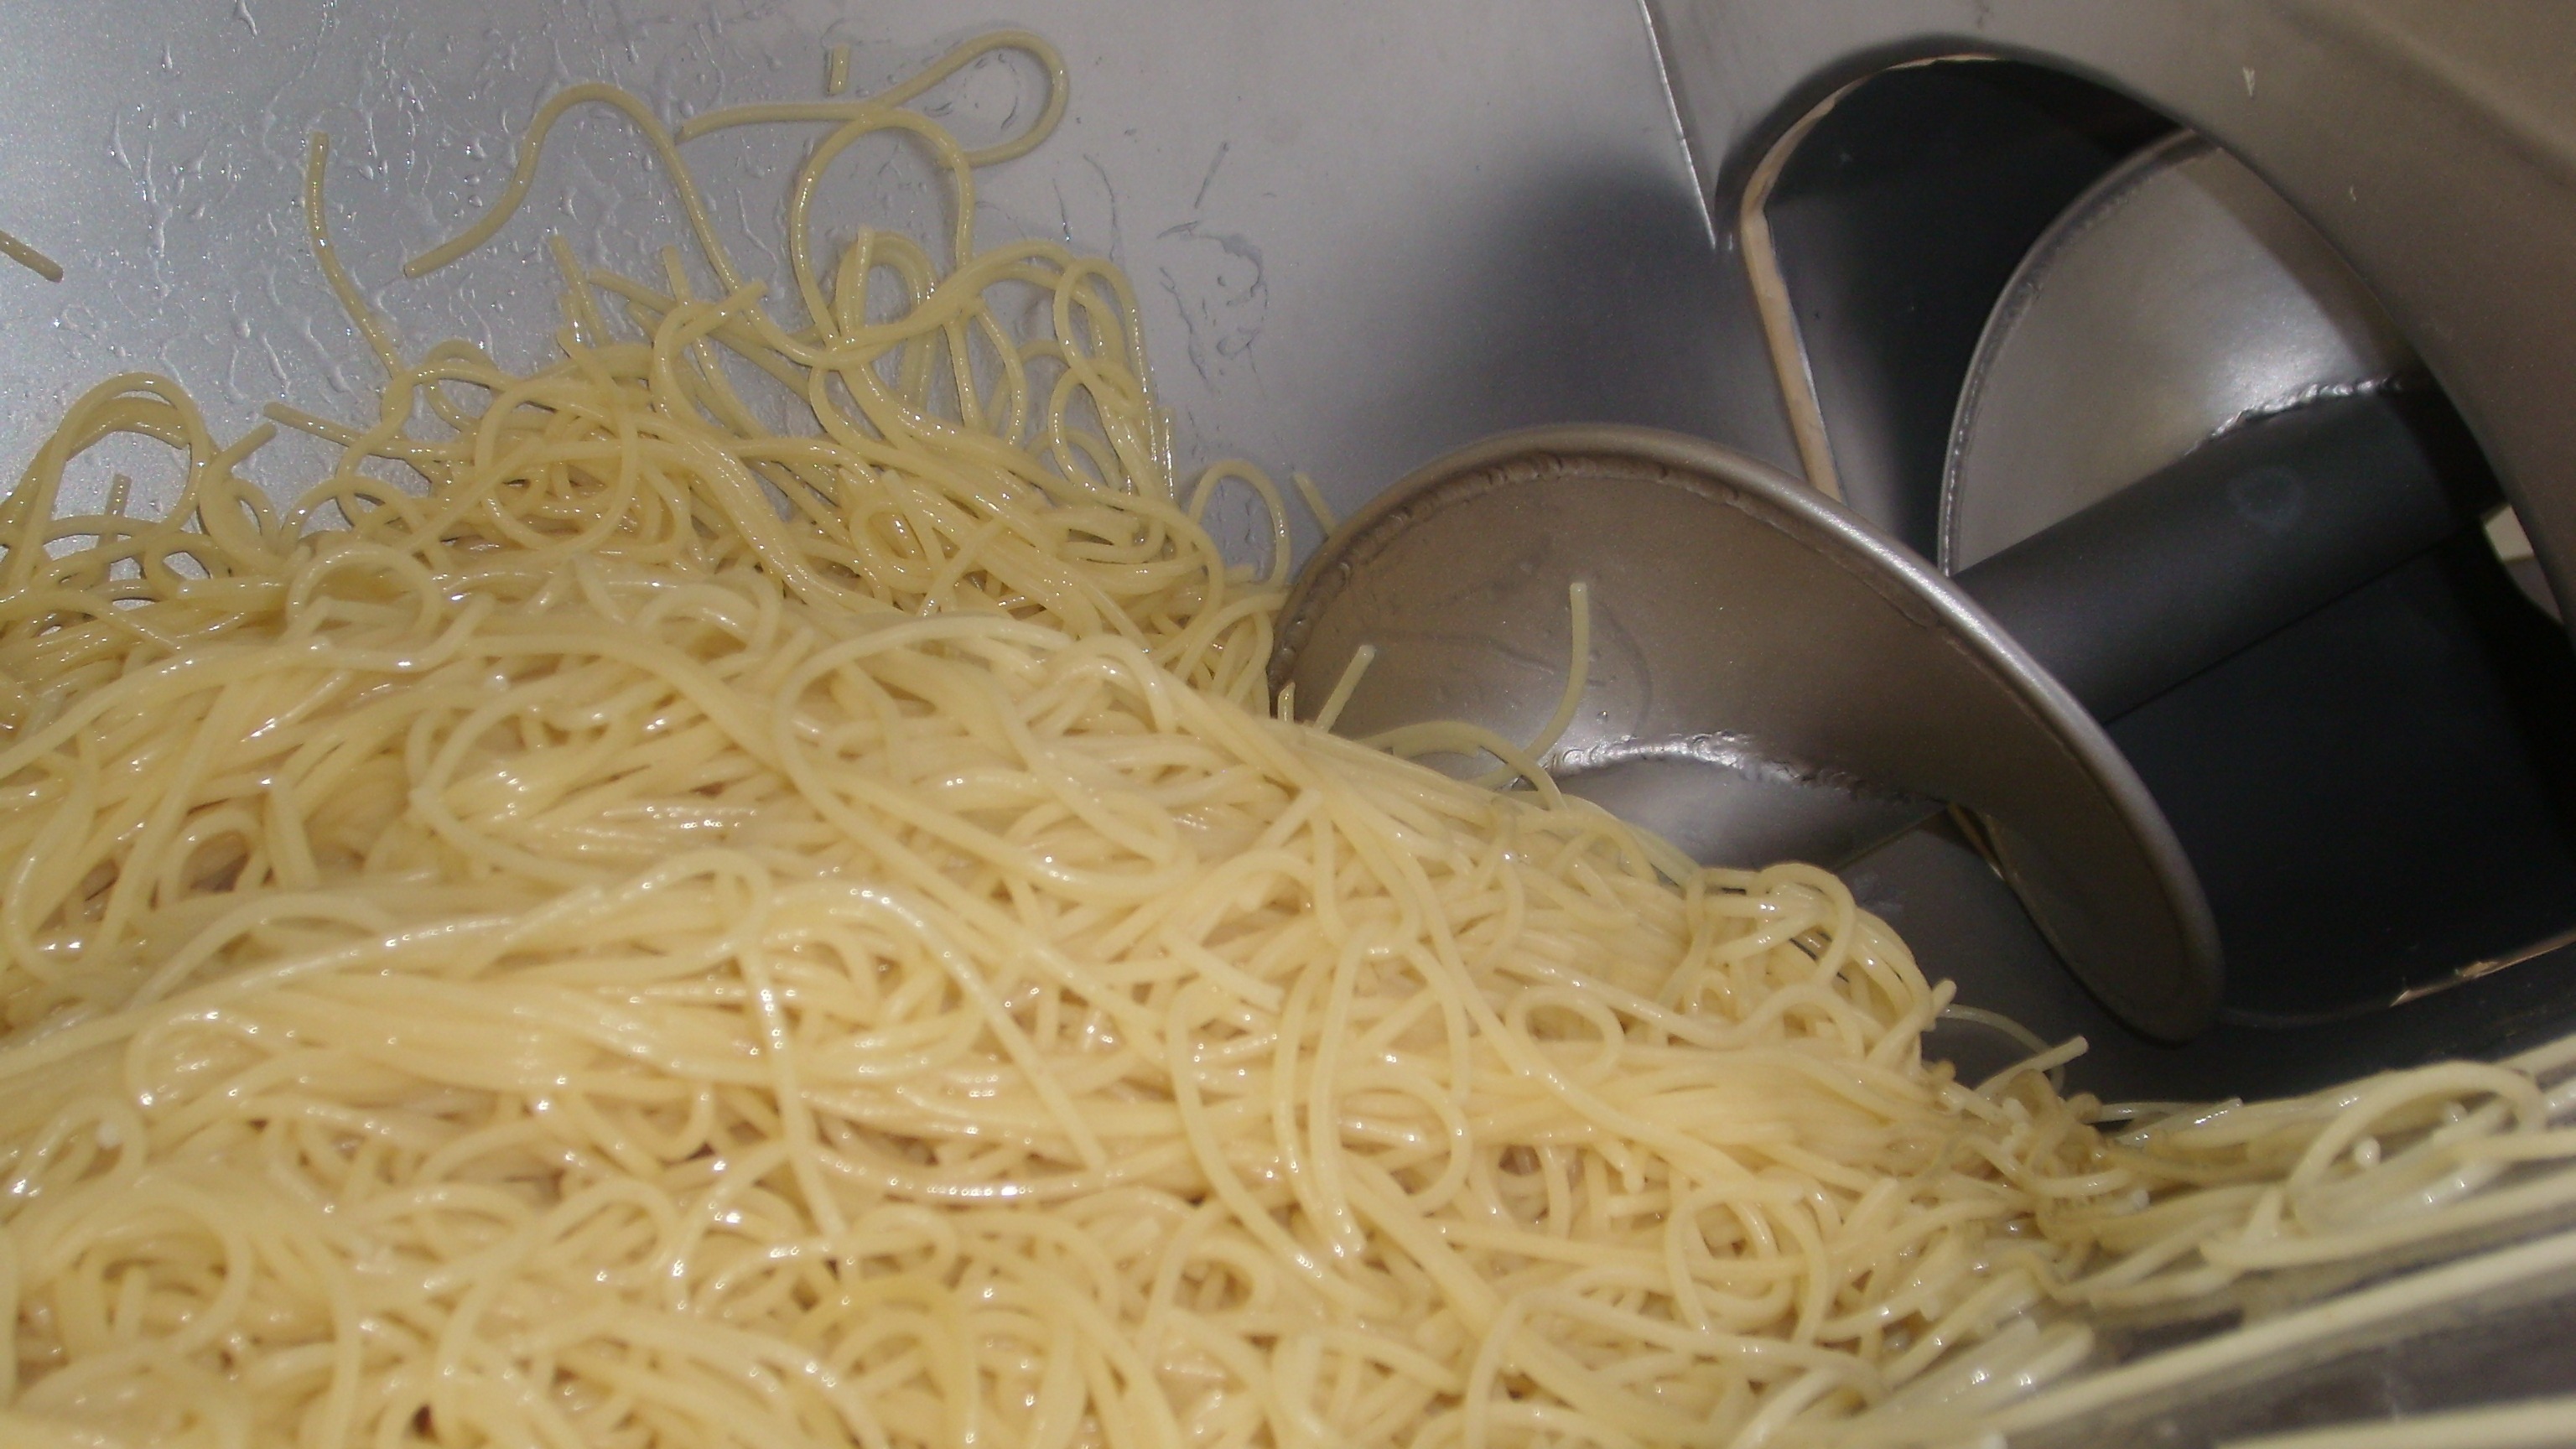 Leonhardt SD til at dosere og fylde pasta i bakker og emballage - doseringsmaskine til at dosere fødevarerprodukt i emballage - dosering af kød, og andre fødevarer - kaldes også fyldeanlæg og fyldemaskiner. Perfekt til kantiner, producent af take-away eller færdigretter og storkøkkener.